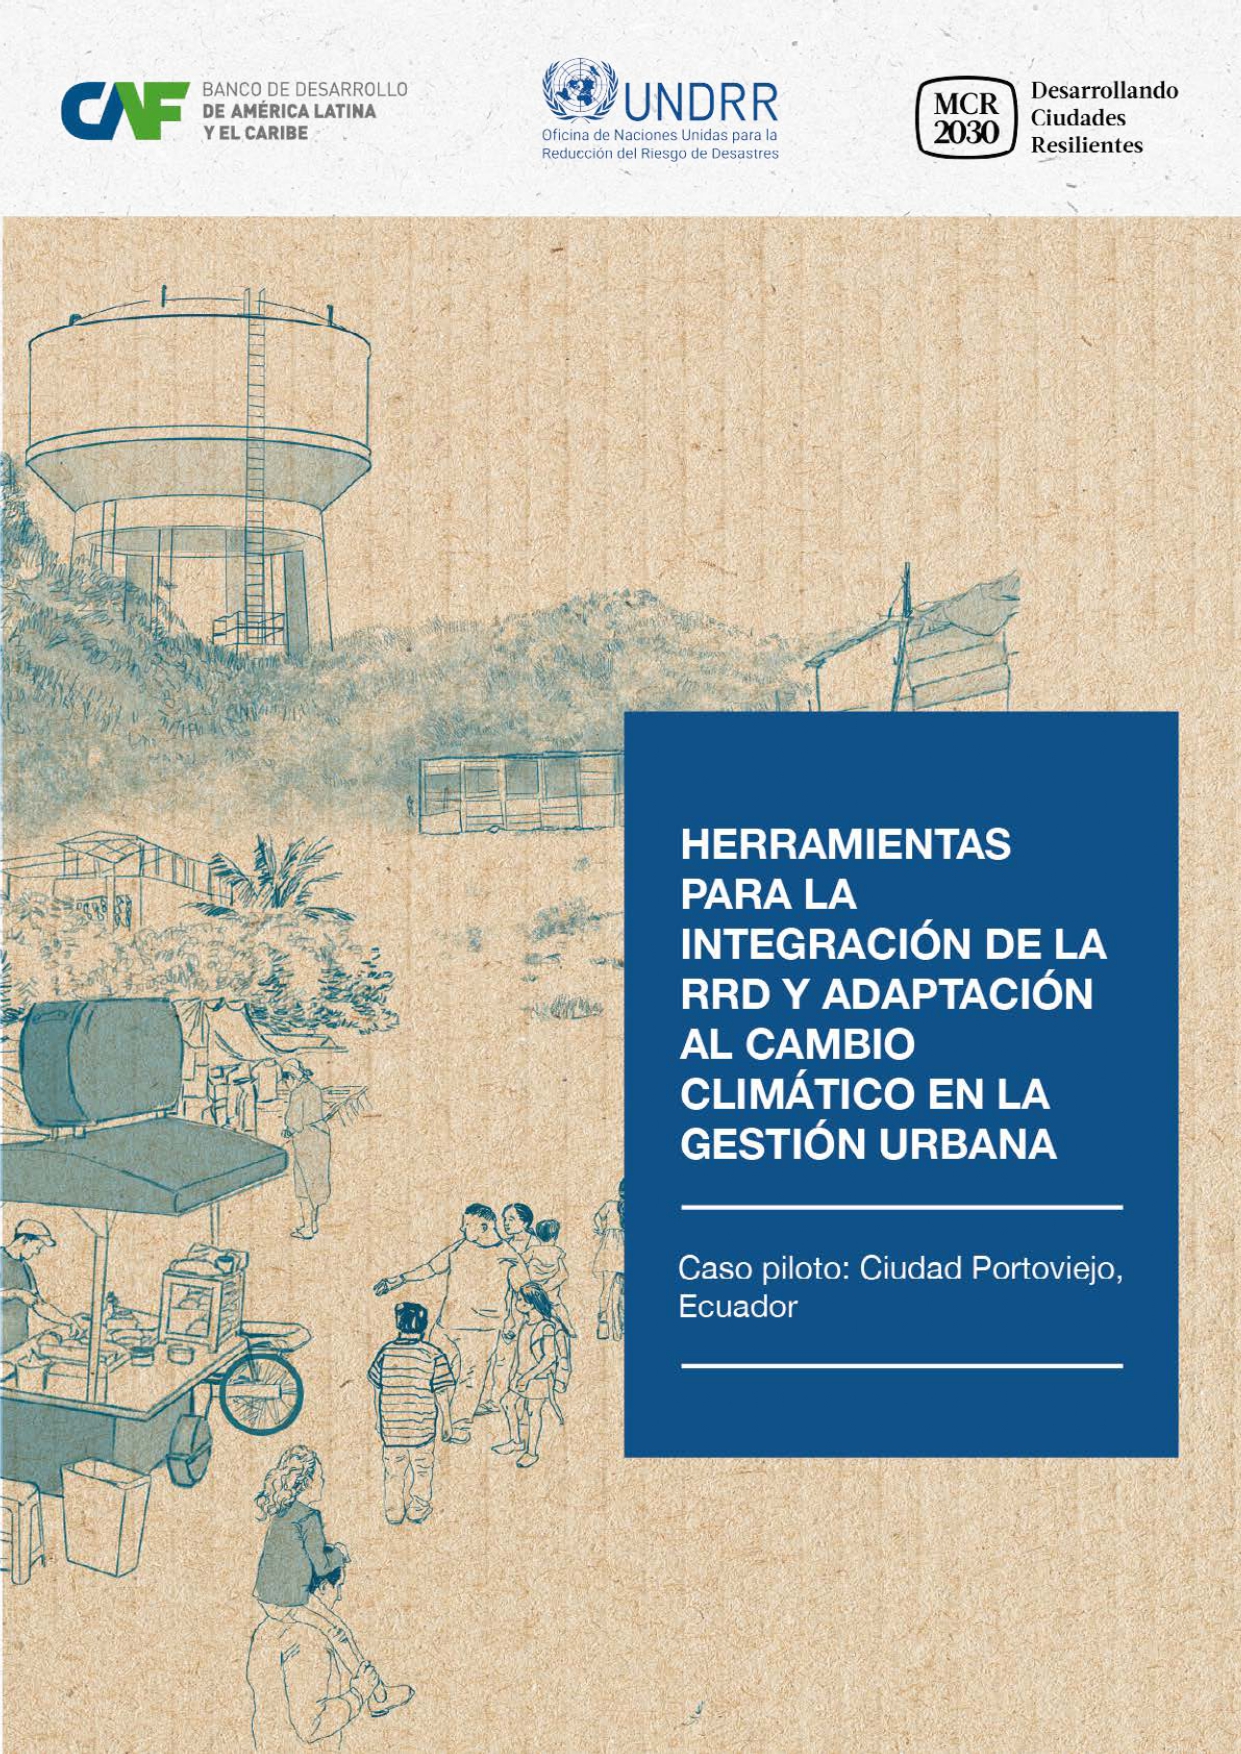 Herramientas para la integración de la RRD y adaptación al cambio climático en la gestión urbana - Caso de Portoviejo